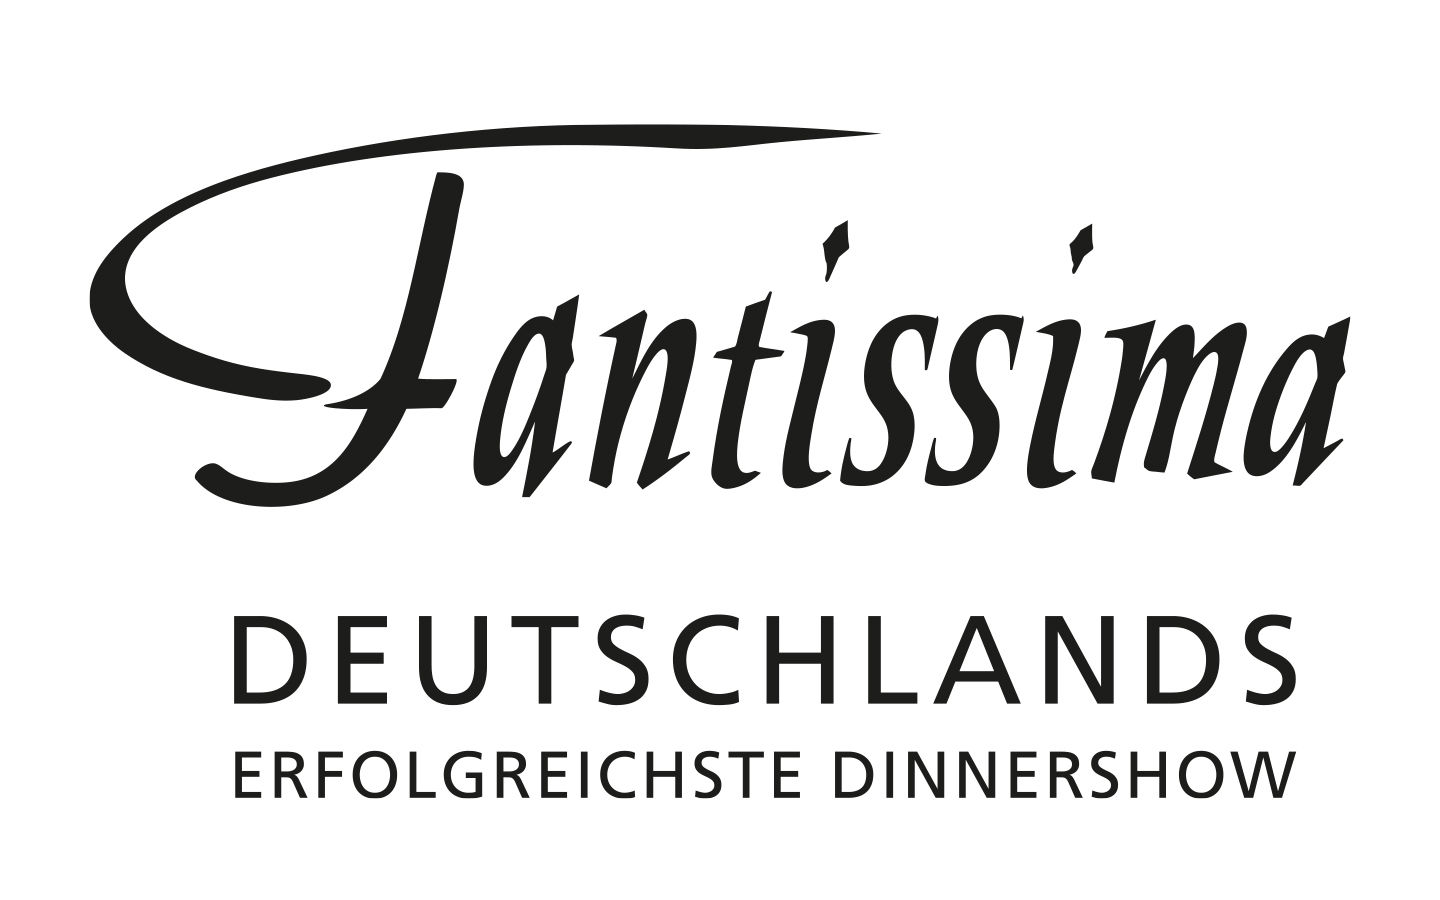 Die Datei fantissima_logo_deutschland_erfolgreichste_dinnershow.zip herunterladen